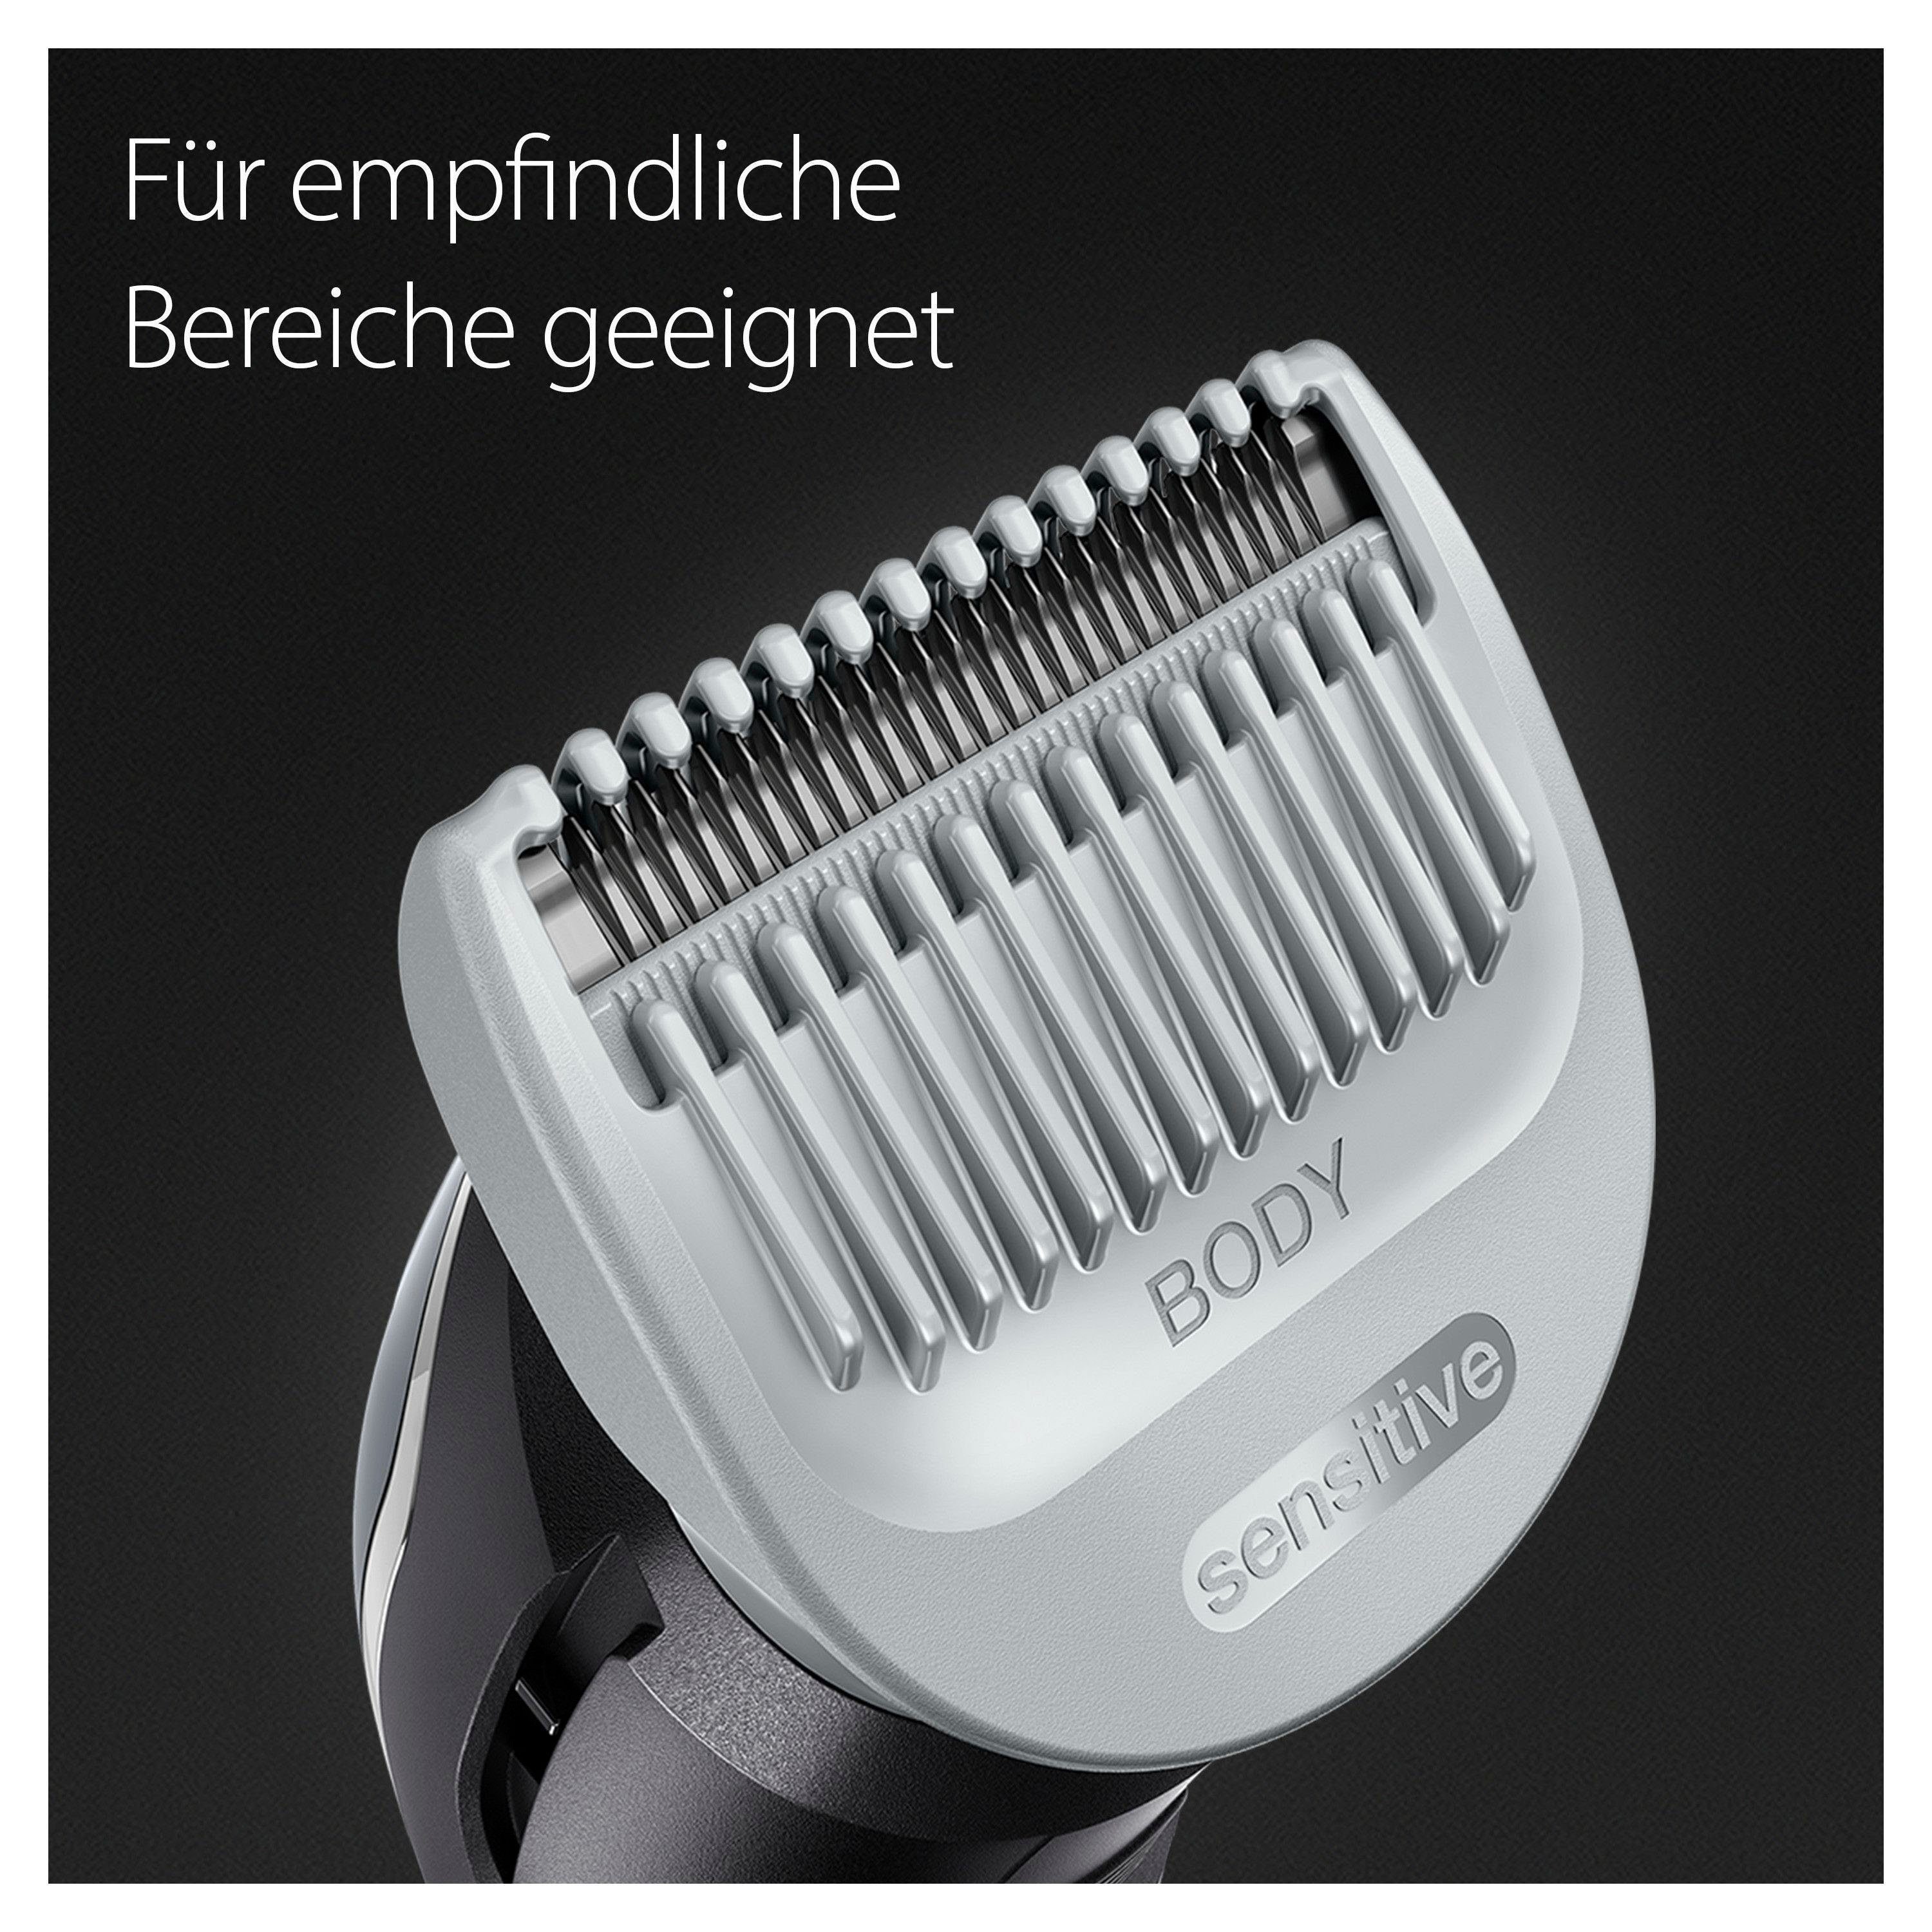 BG3340, Abwaschbar Braun Haarschneider Bodygroomer SkinShield-Technologie,